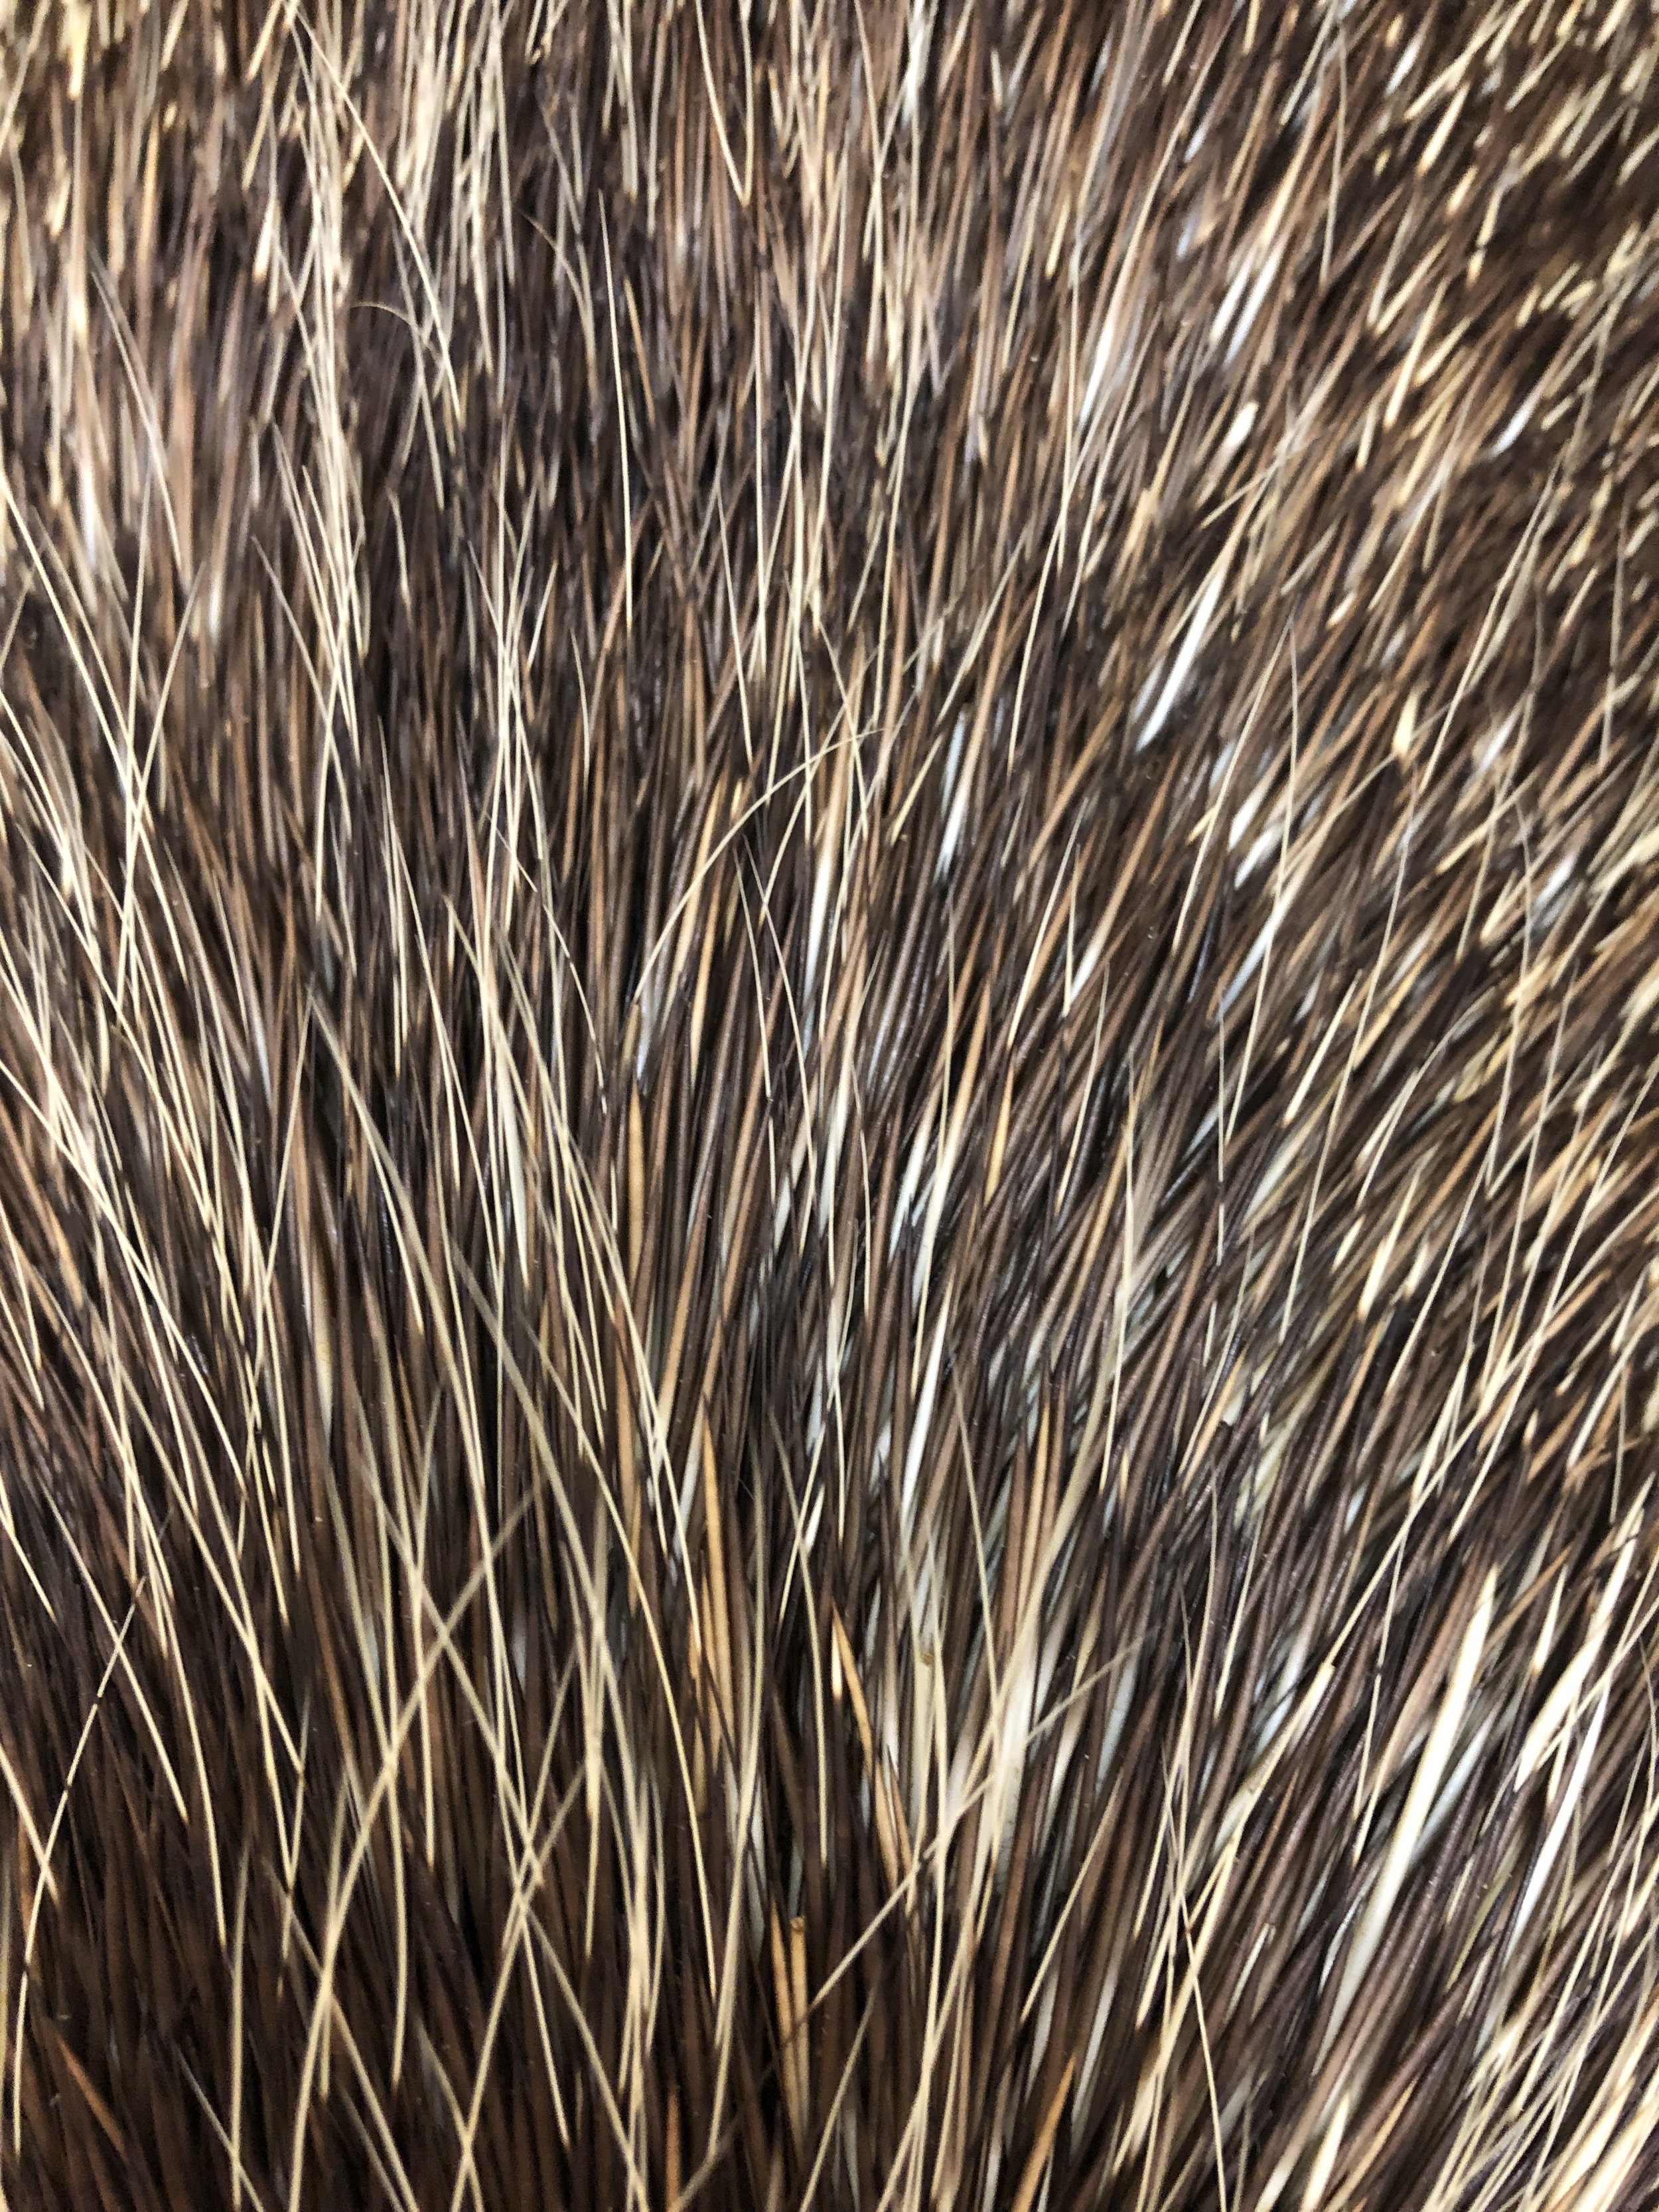 Porcupine fur showing a range of colors